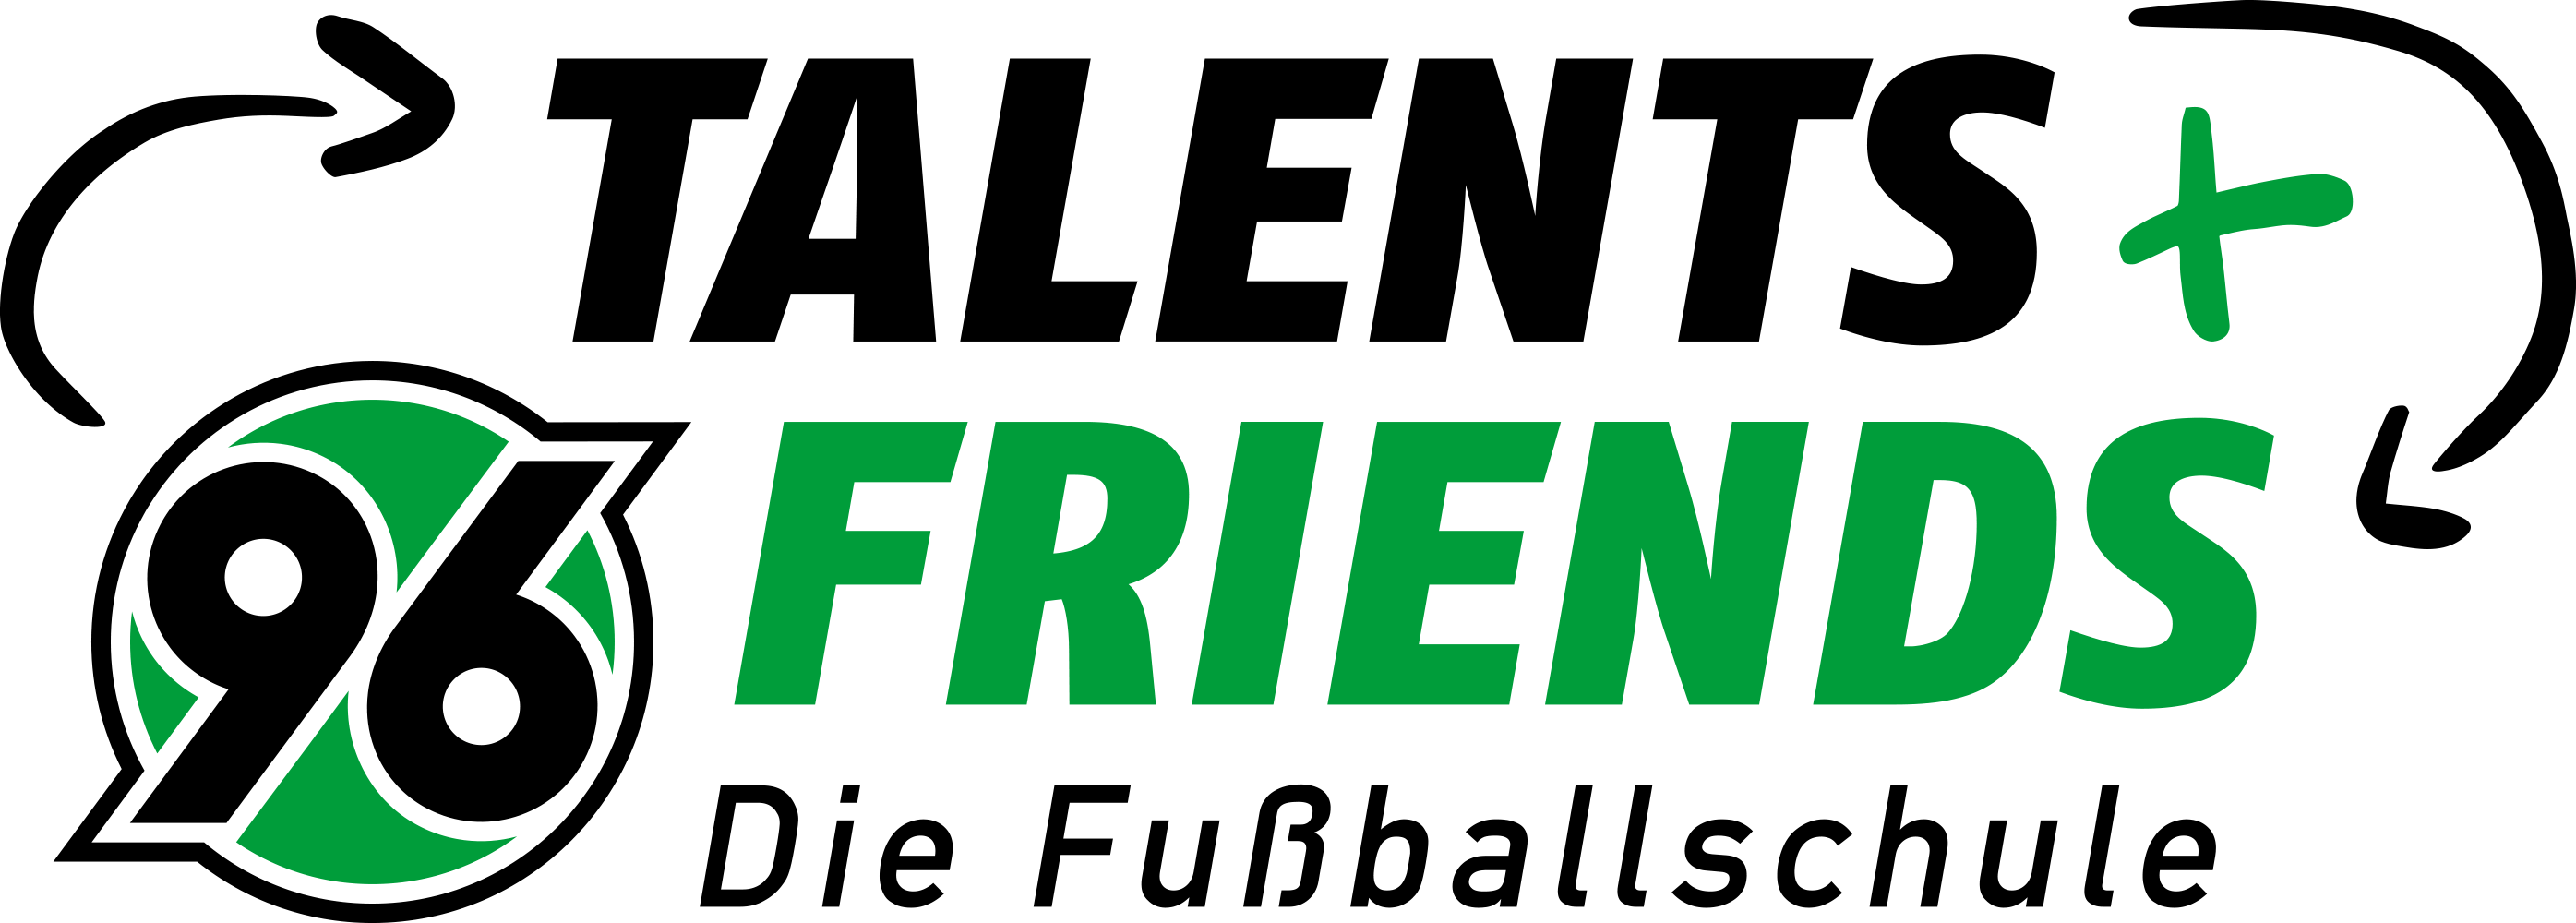 96-Talents+Friends ist zu Gast beim SV Northen-Lenthe